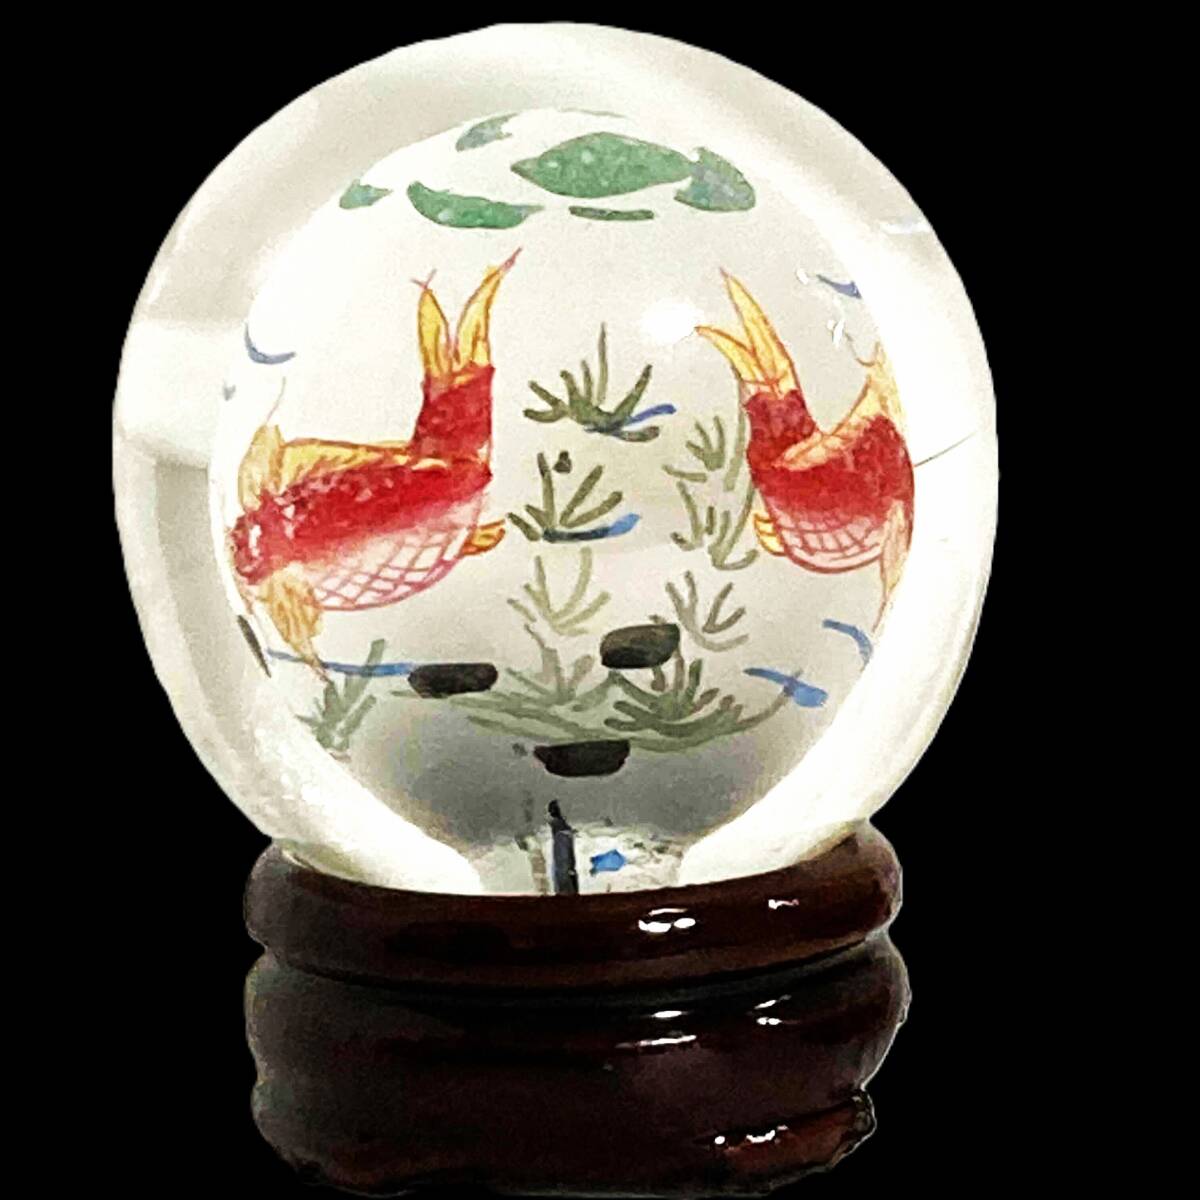 Китайское искусство, круглый шар с изображением внутри, с деревянной основой, высота ок. 5, 5 см, ремесло, Хрустальный шар, рисуем внутри шара, стеклянный шар, стекольное дело, орнамент, внутренняя картина, золотая рыбка, Китай, рыба, Ремесло, Стекло, Ремесленное Стекло